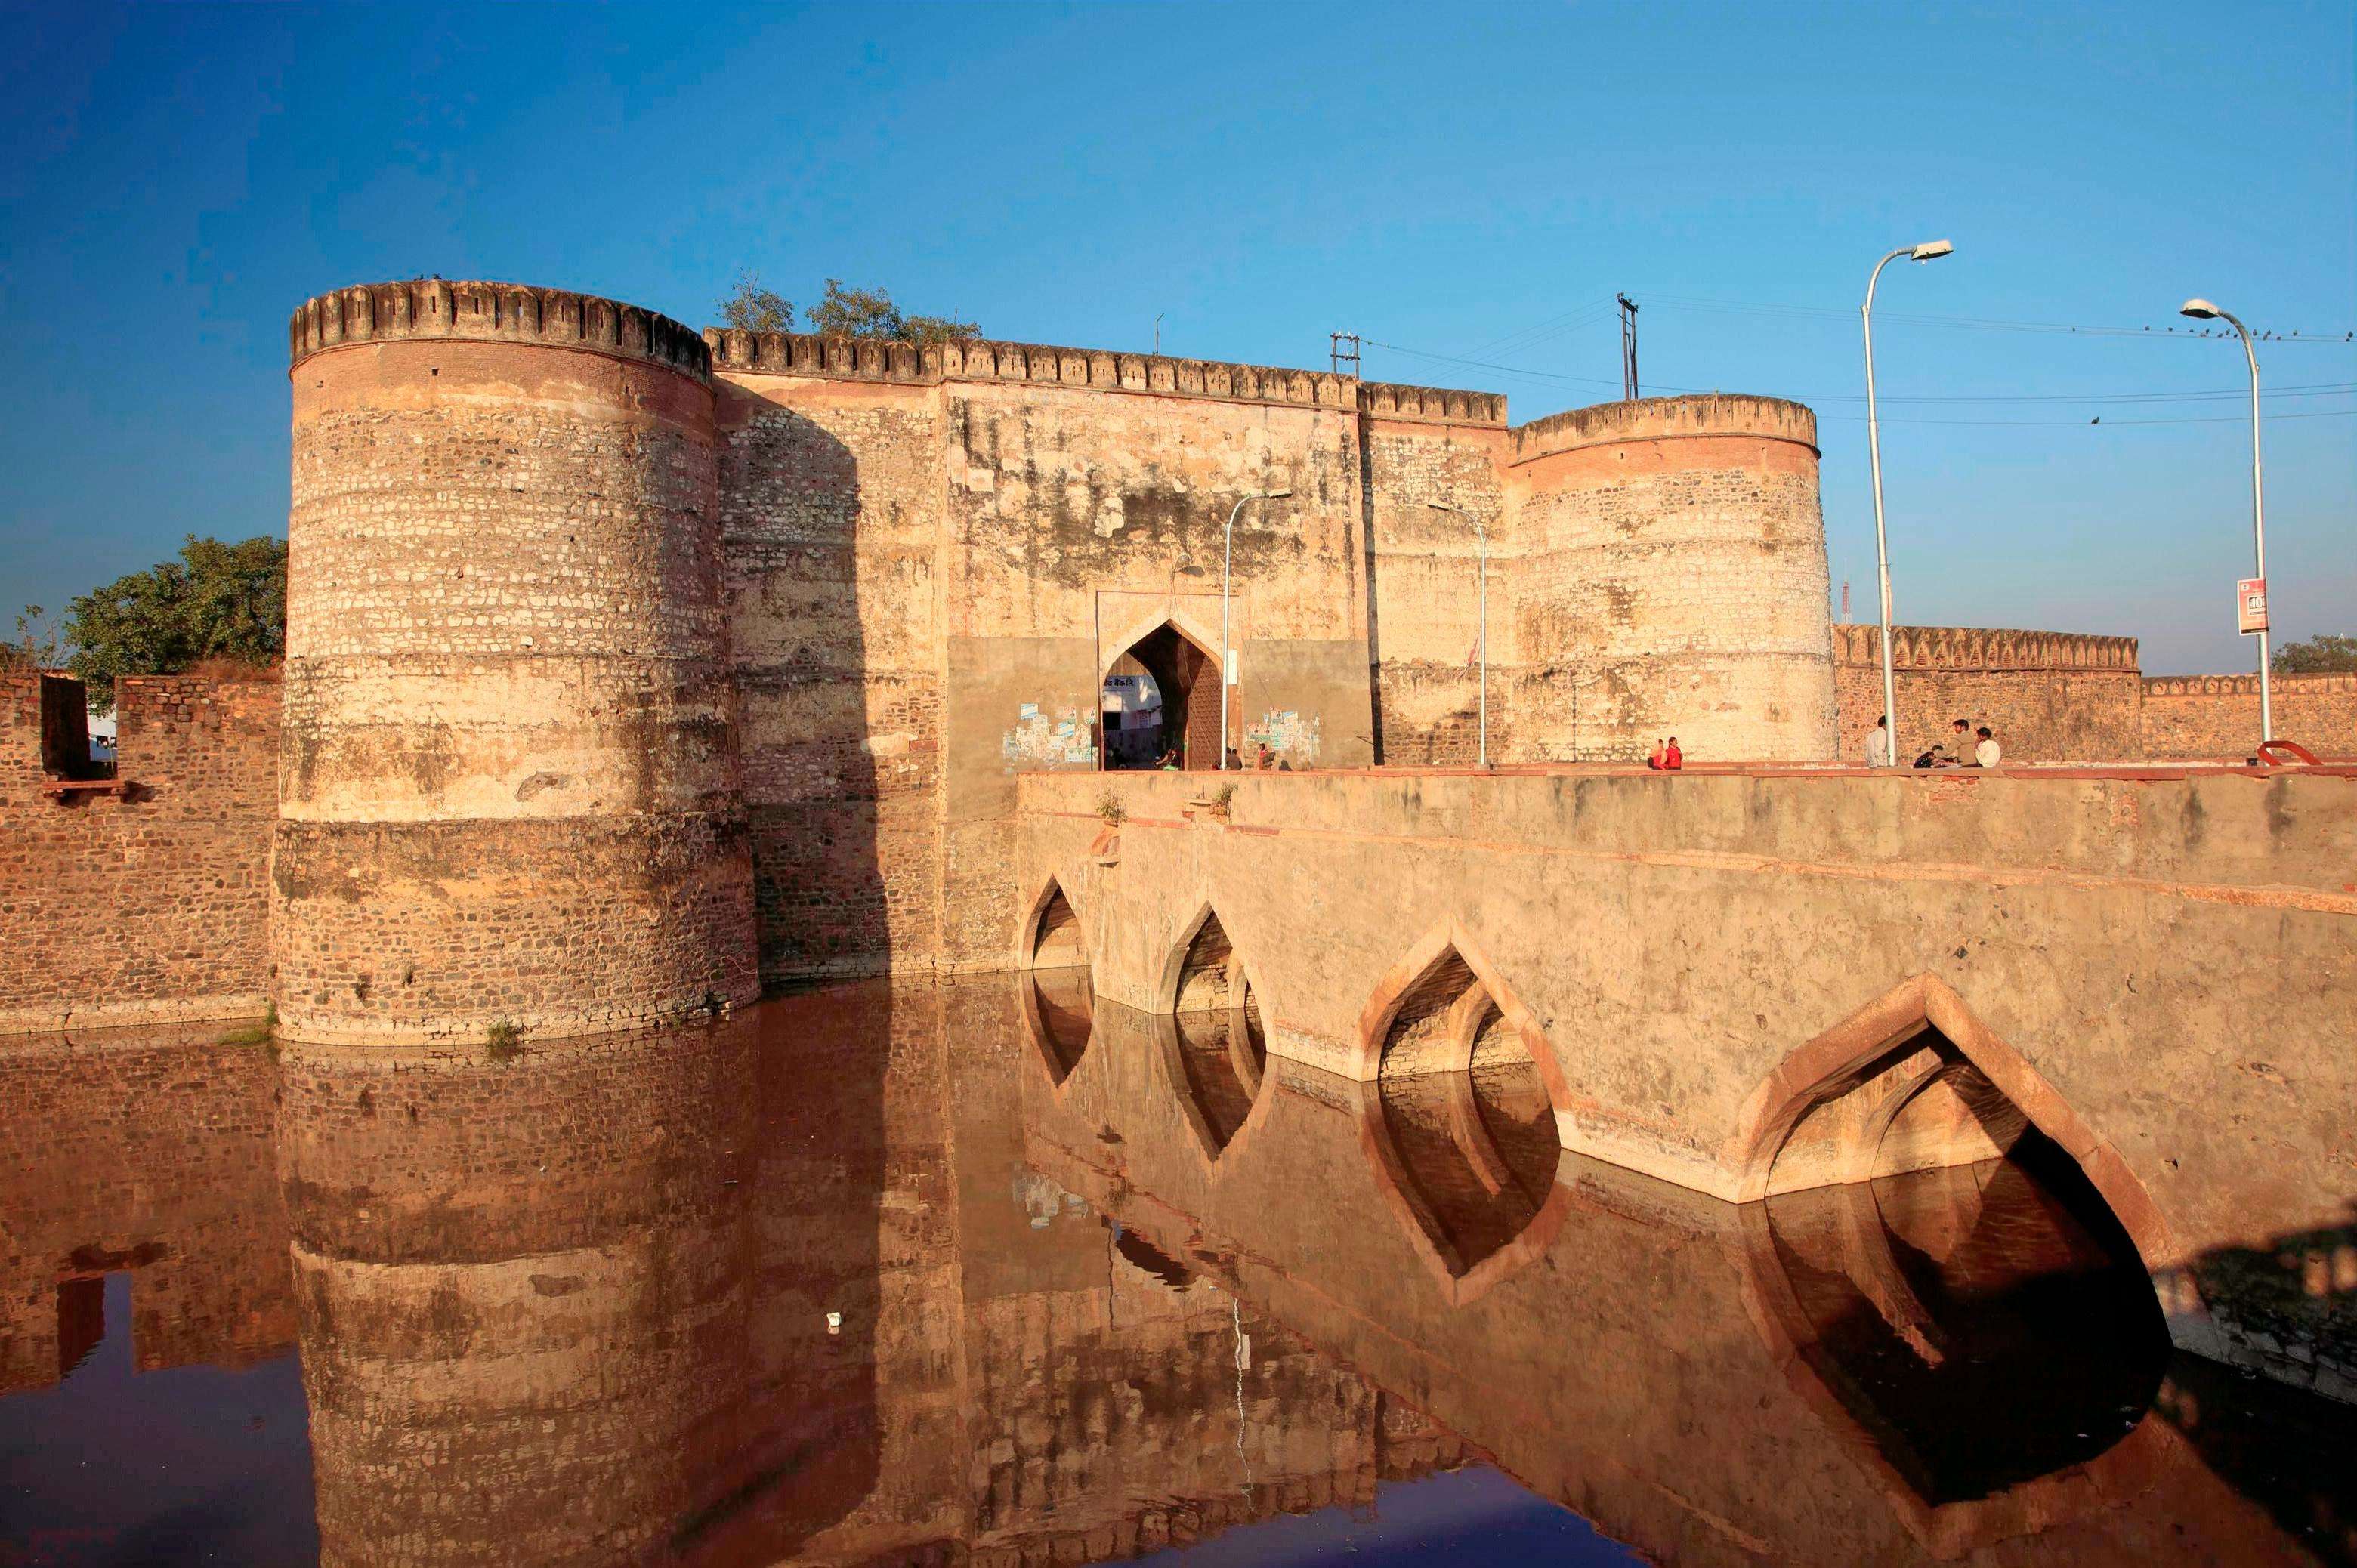 Travel: लोहगढ़ का किला के बारे में आपको पता होना चाहिए